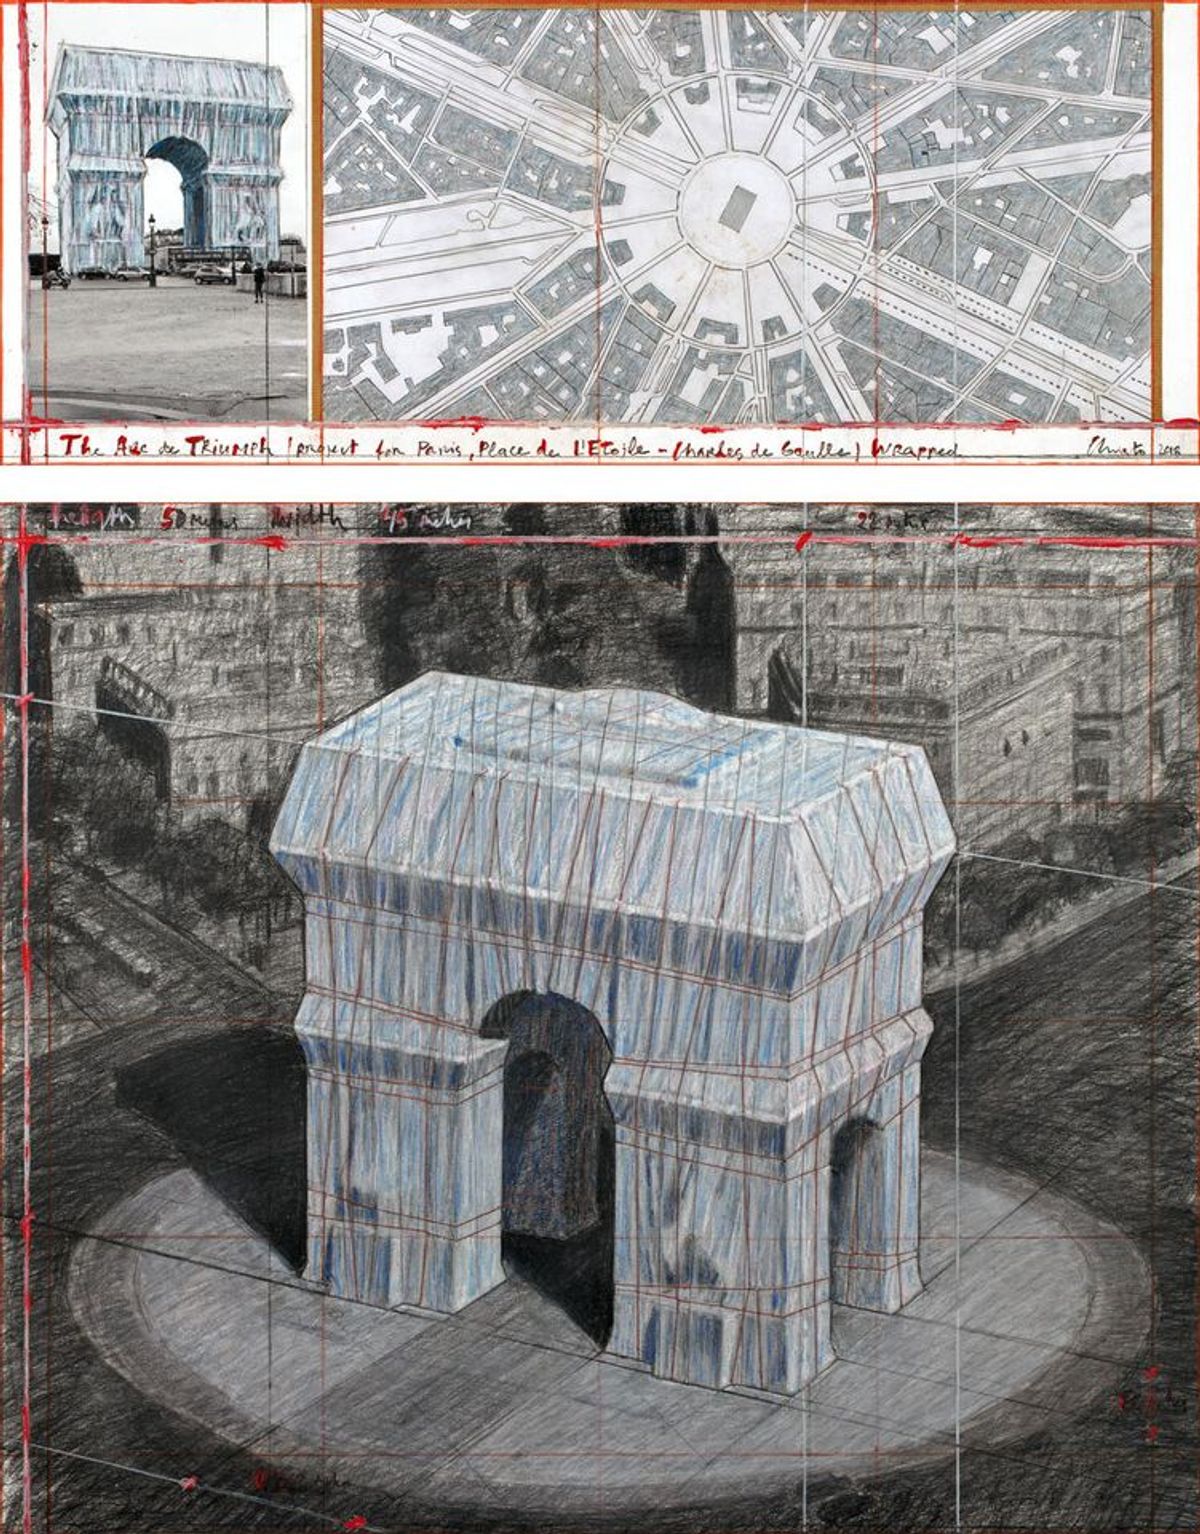 Christo's collage The Arc de Triumph (Project for Paris, Place de l'Etoile – Charles de Gaulle) Wrapped (2018) Photo: André Grossmann; © 2018 Christo